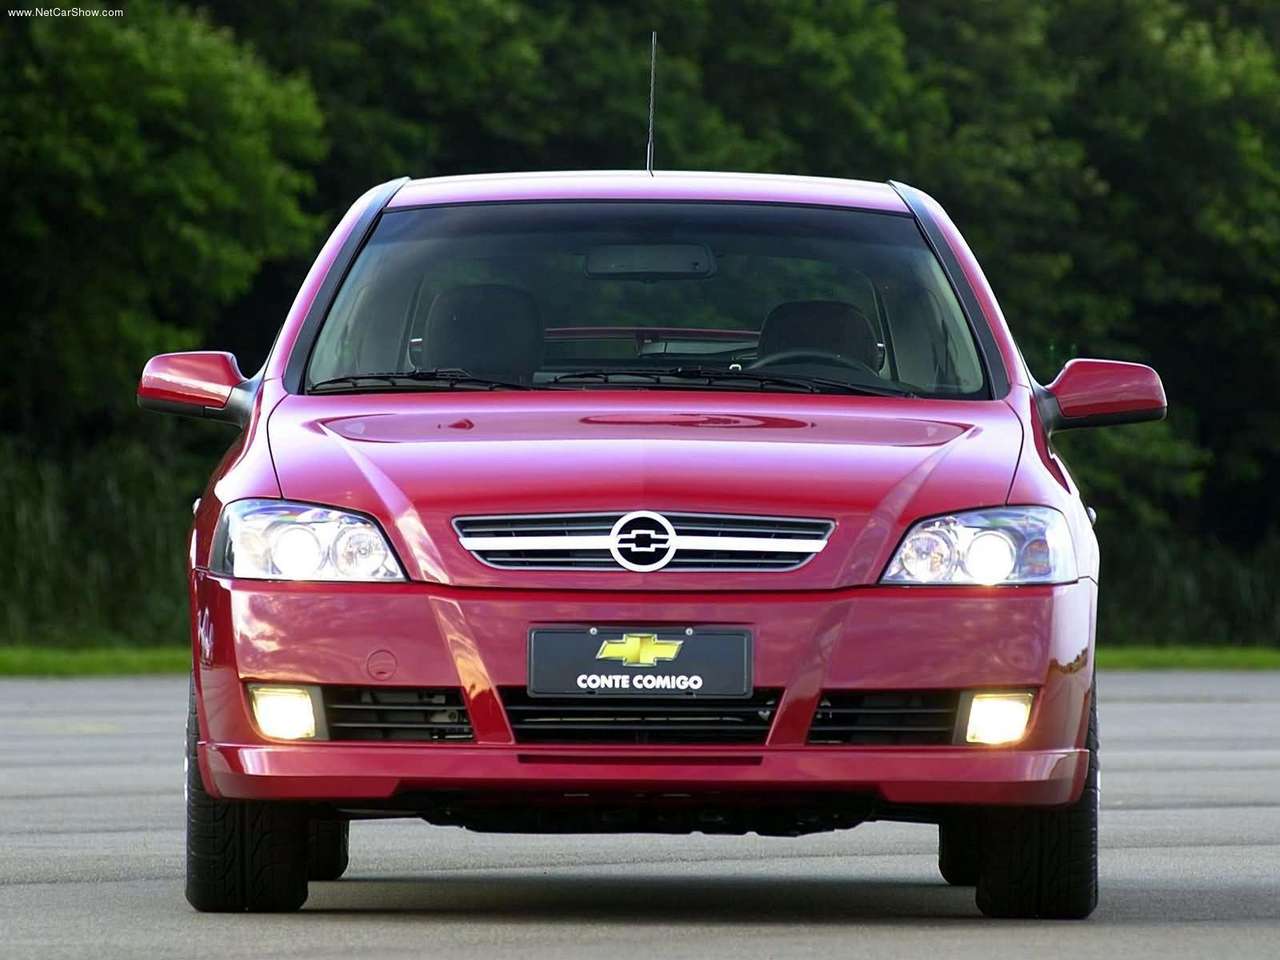 Chevrolet Astra GSi 2.0 16V (2005) ... es una bestia, el mejor astra ...